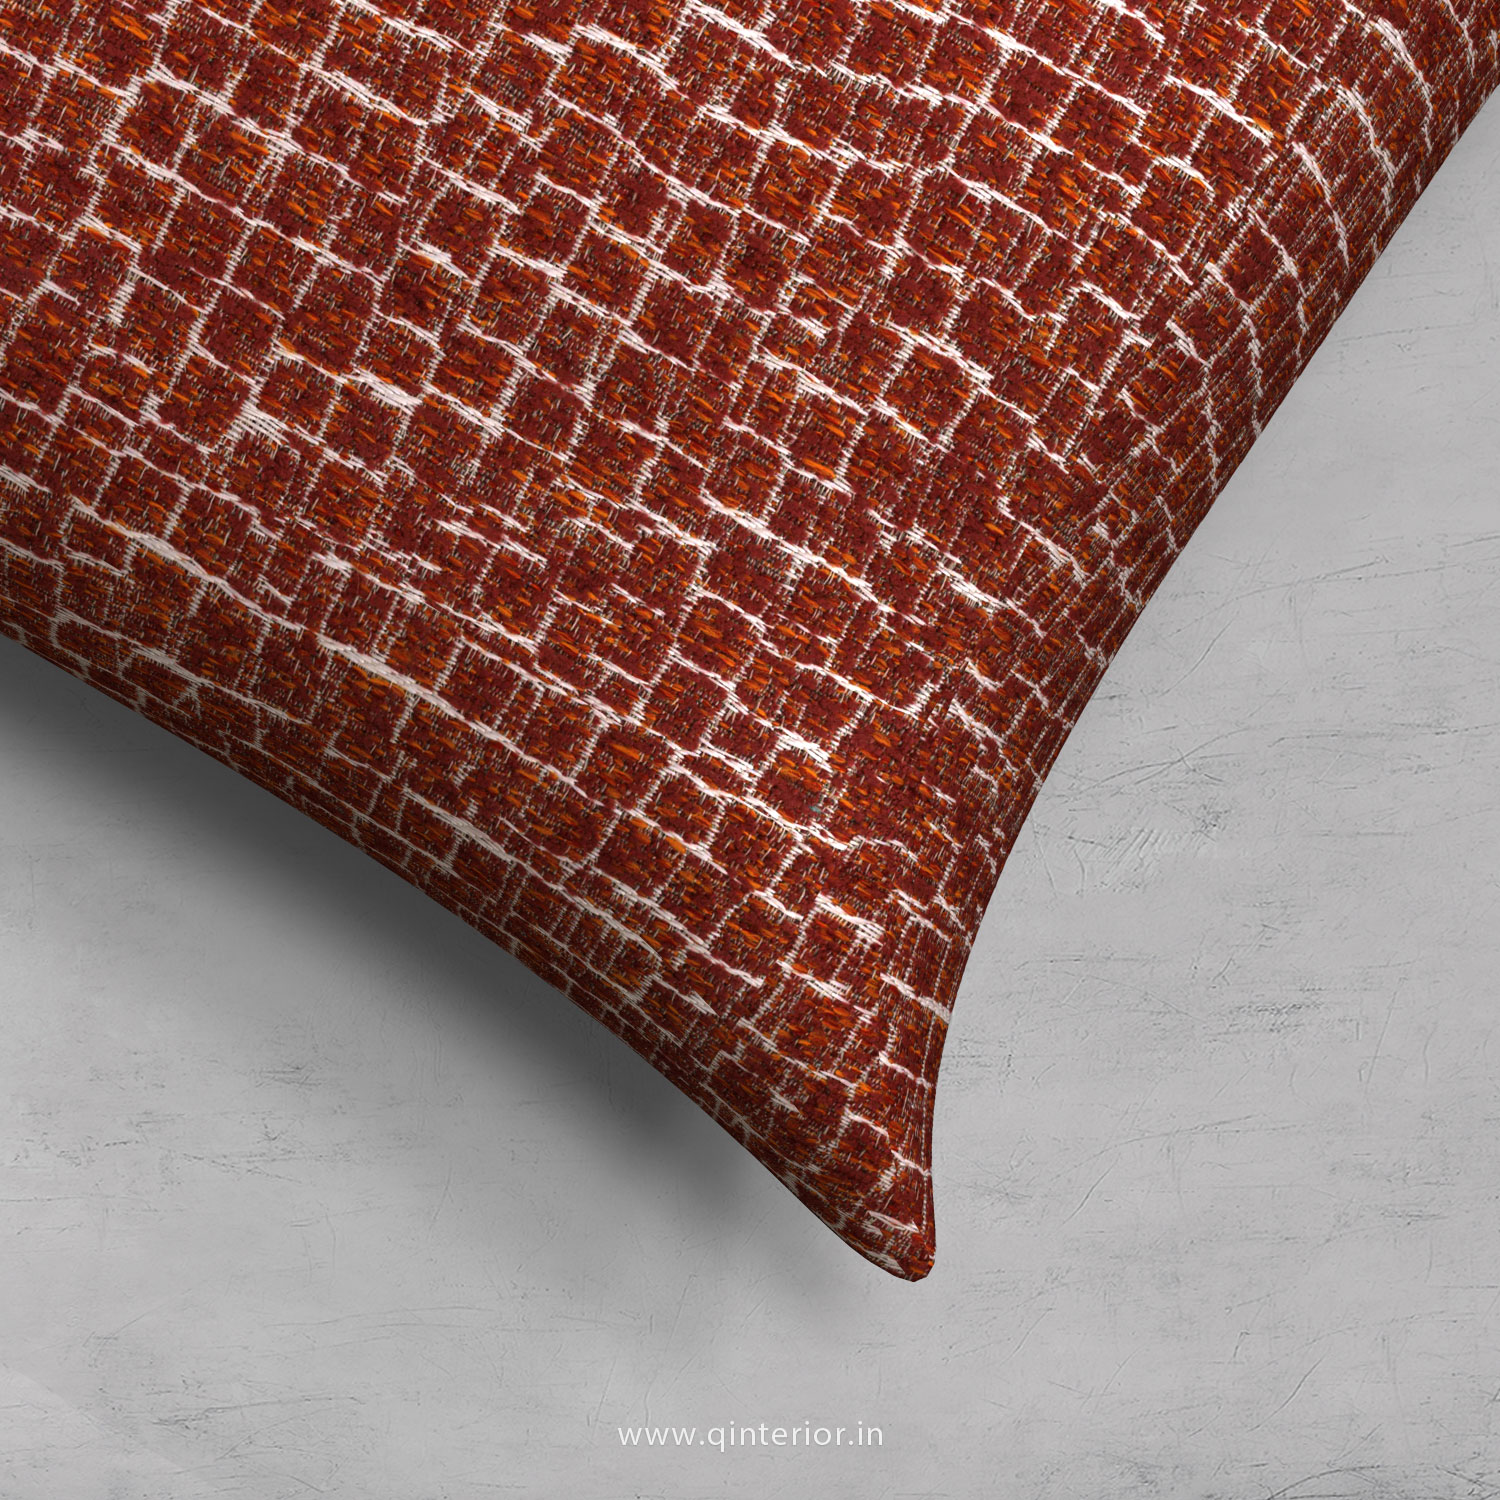 Cushion With Cushion Cover in Jacquard- CUS001 JQ33